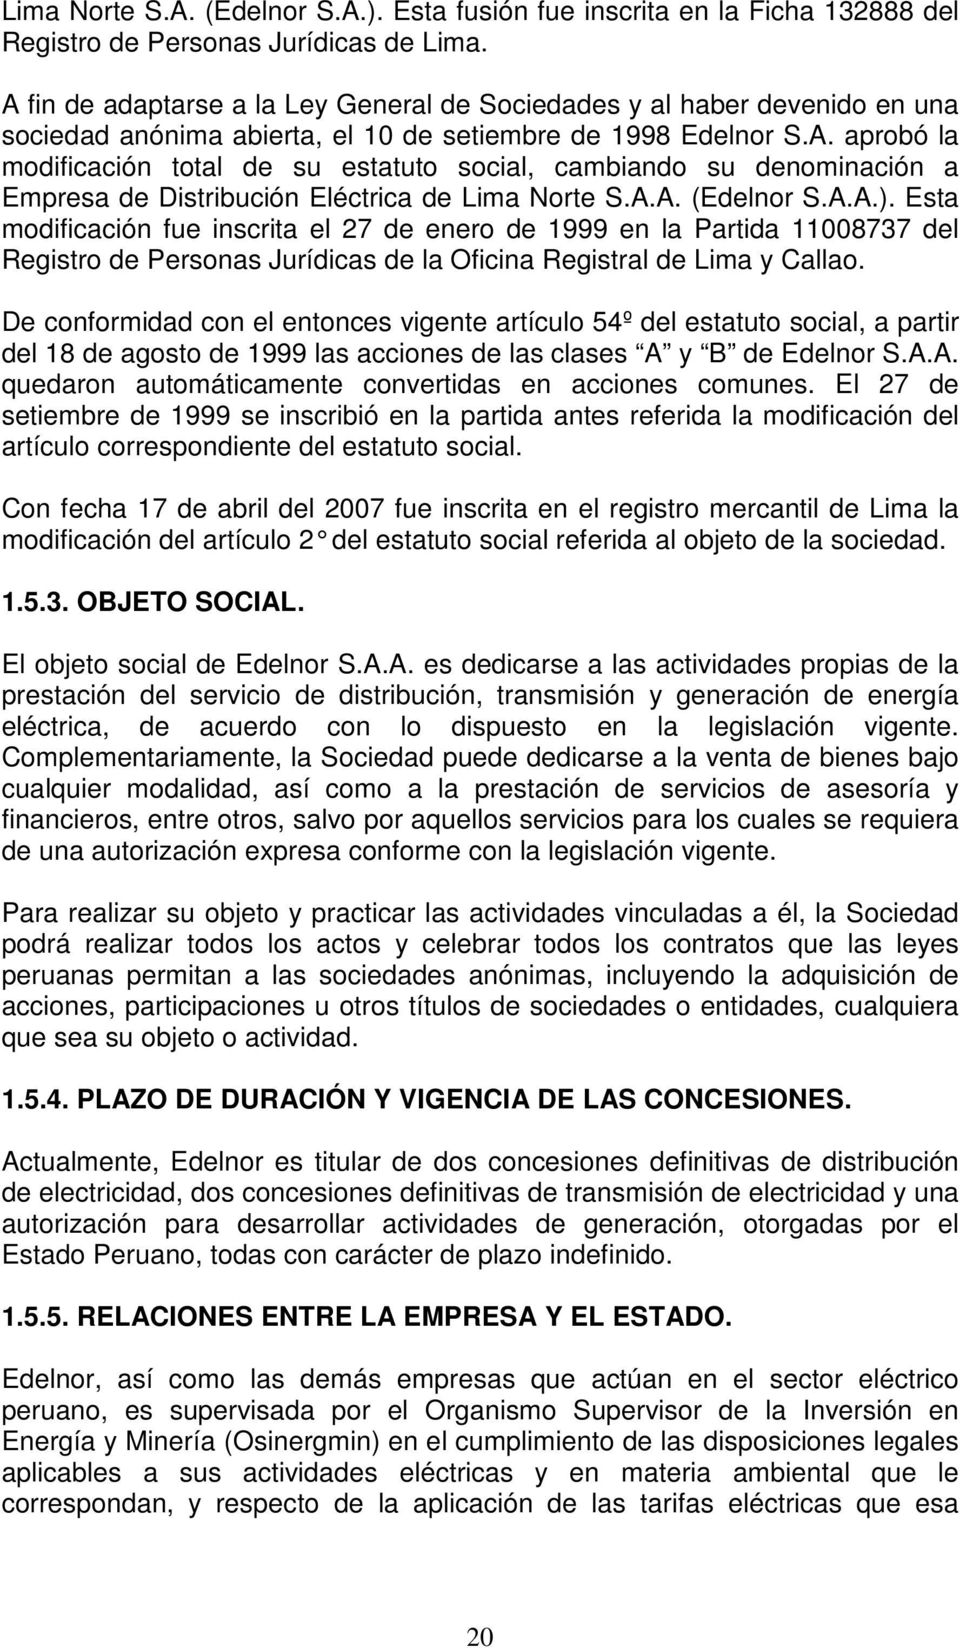 A.A. (Edelnor S.A.A.). Esta modificación fue inscrita el 27 de enero de 1999 en la Partida 11008737 del Registro de Personas Jurídicas de la Oficina Registral de Lima y Callao.